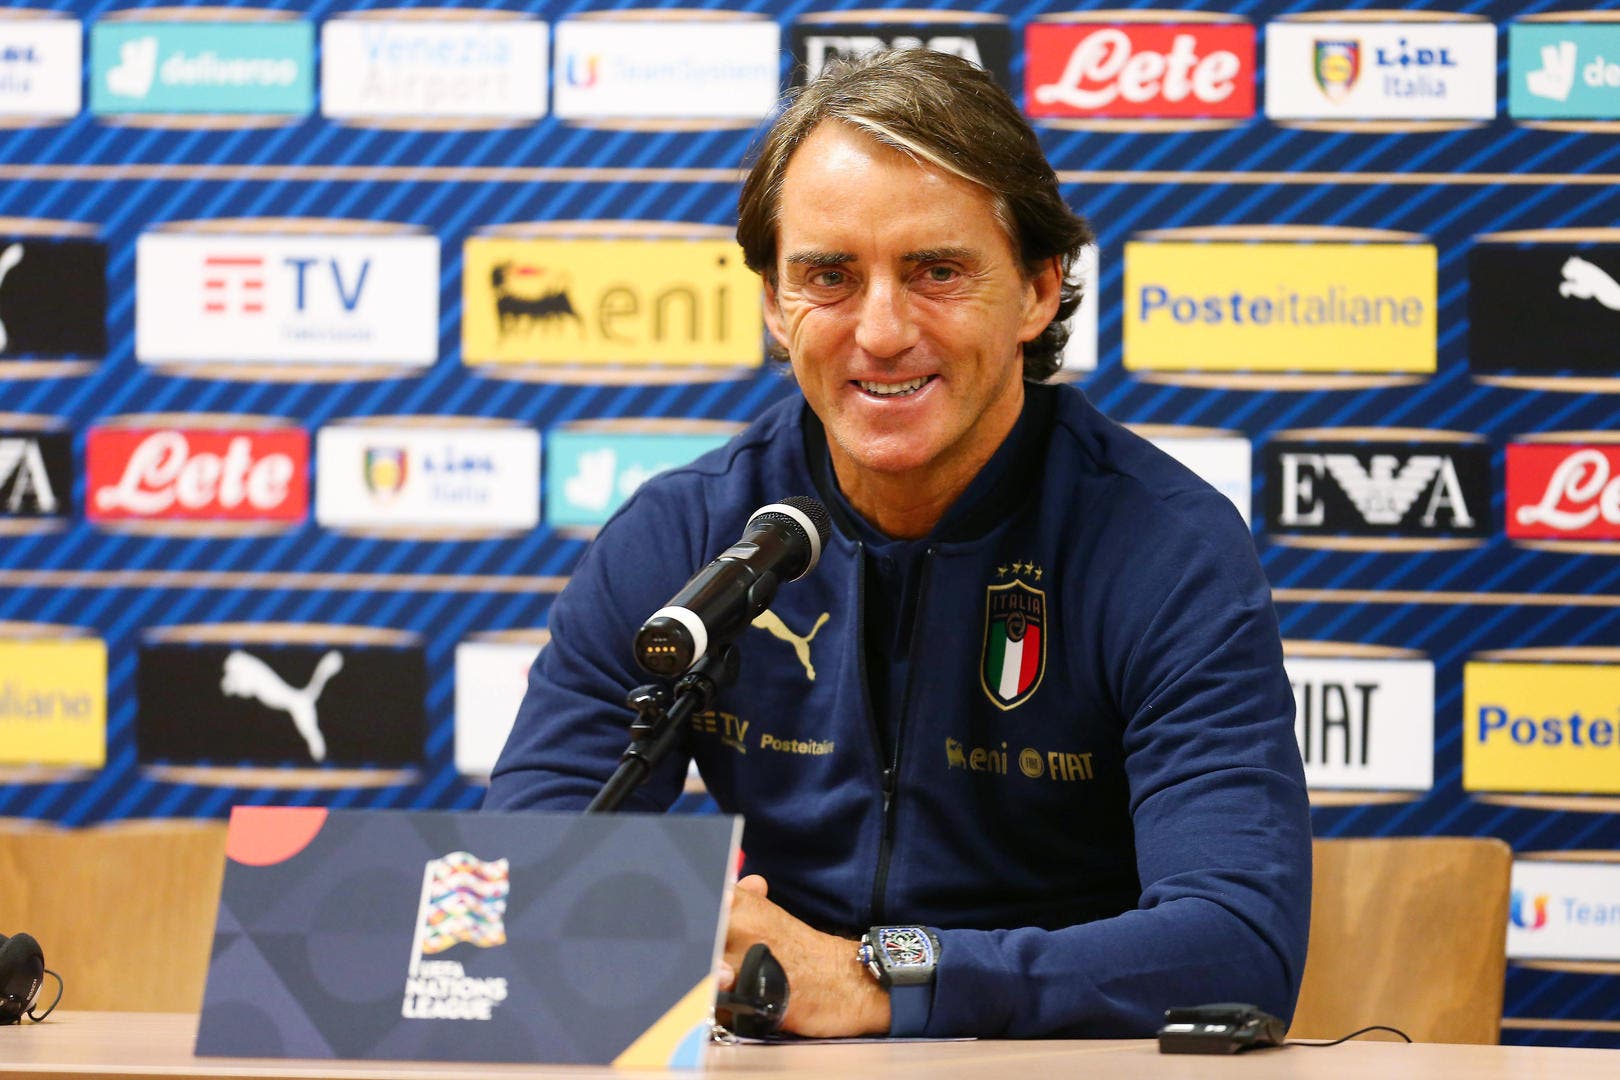 Finale Euro 2020 : Mancini révèle pourquoi son équipe italienne a battu l’Angleterre